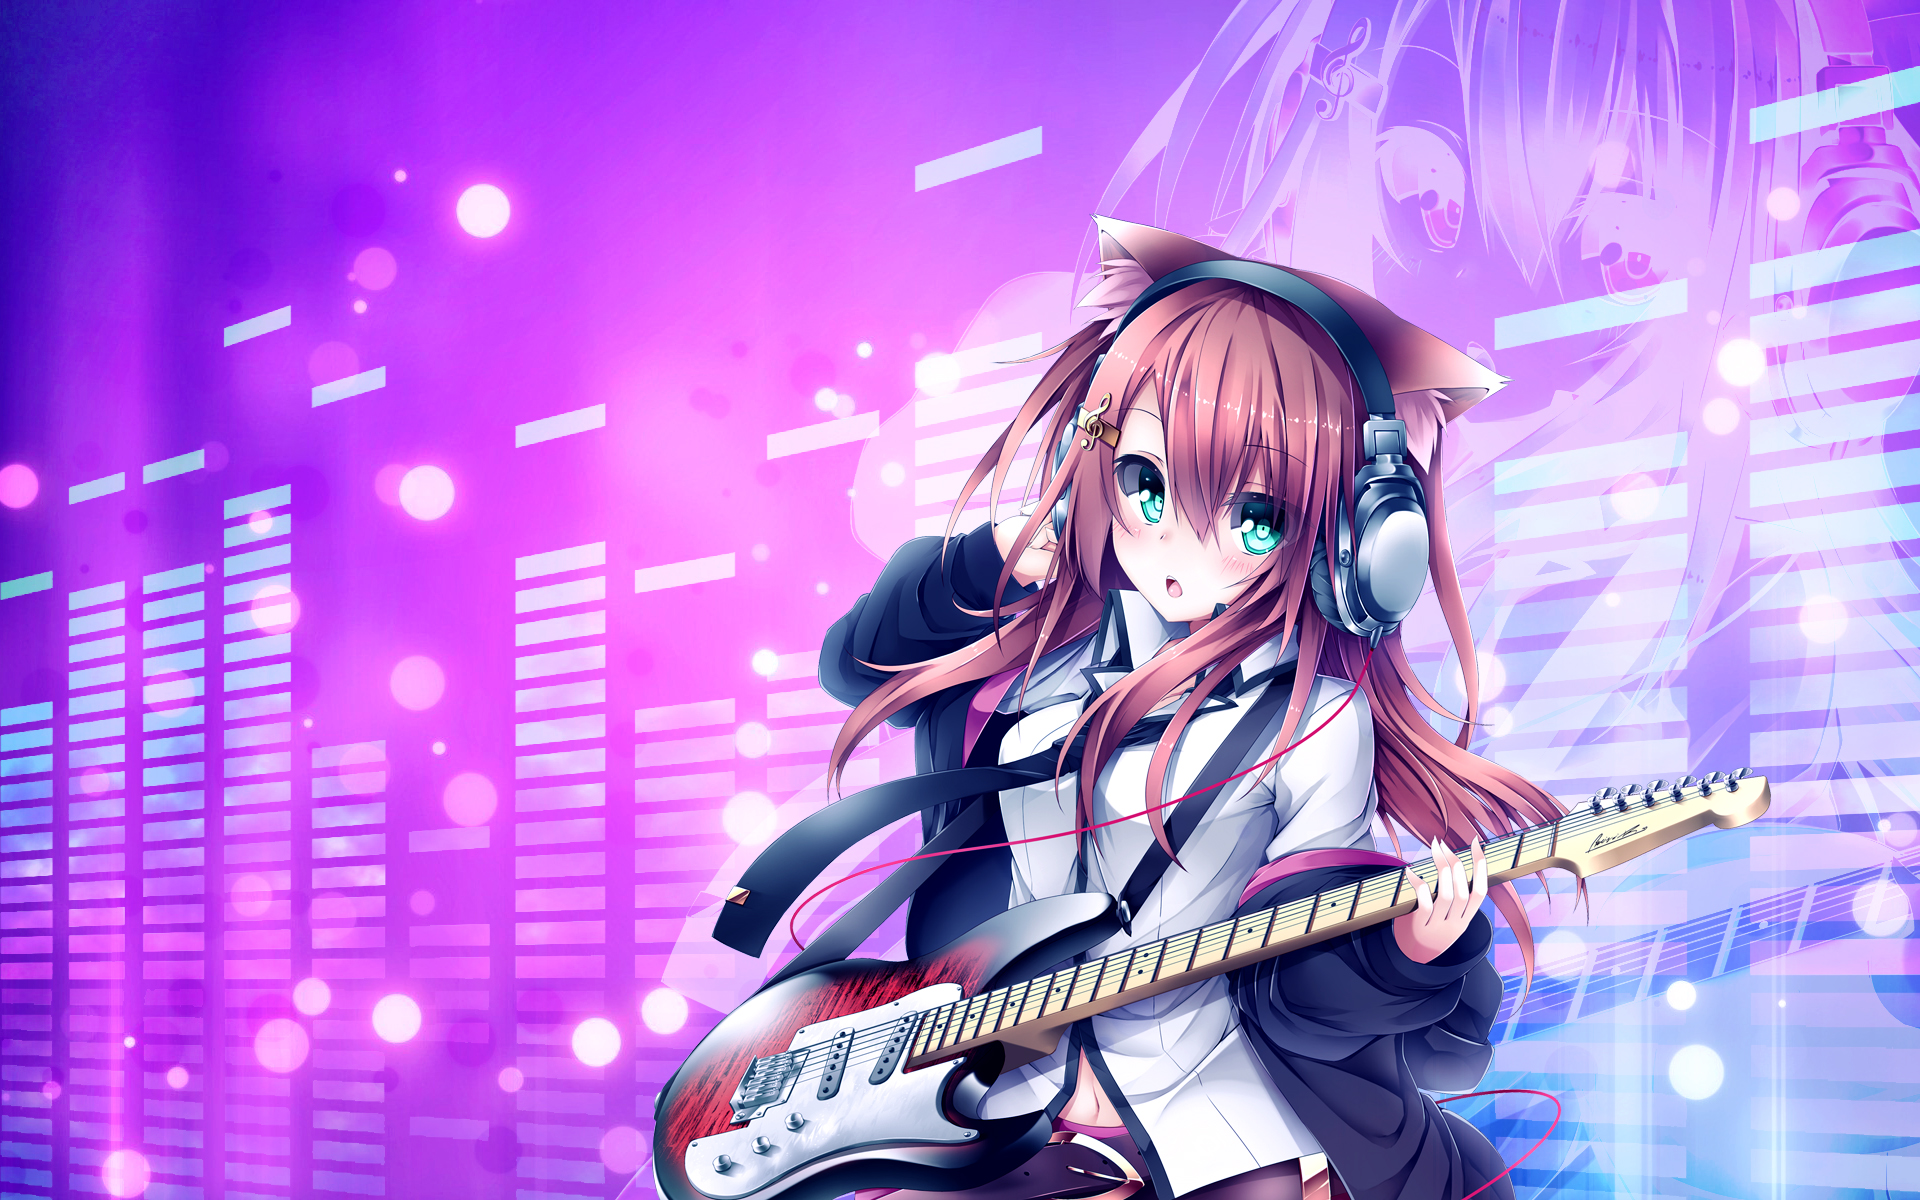 gamer girl wallpaper,guitar,guitarist,musician,performance,bass guitar